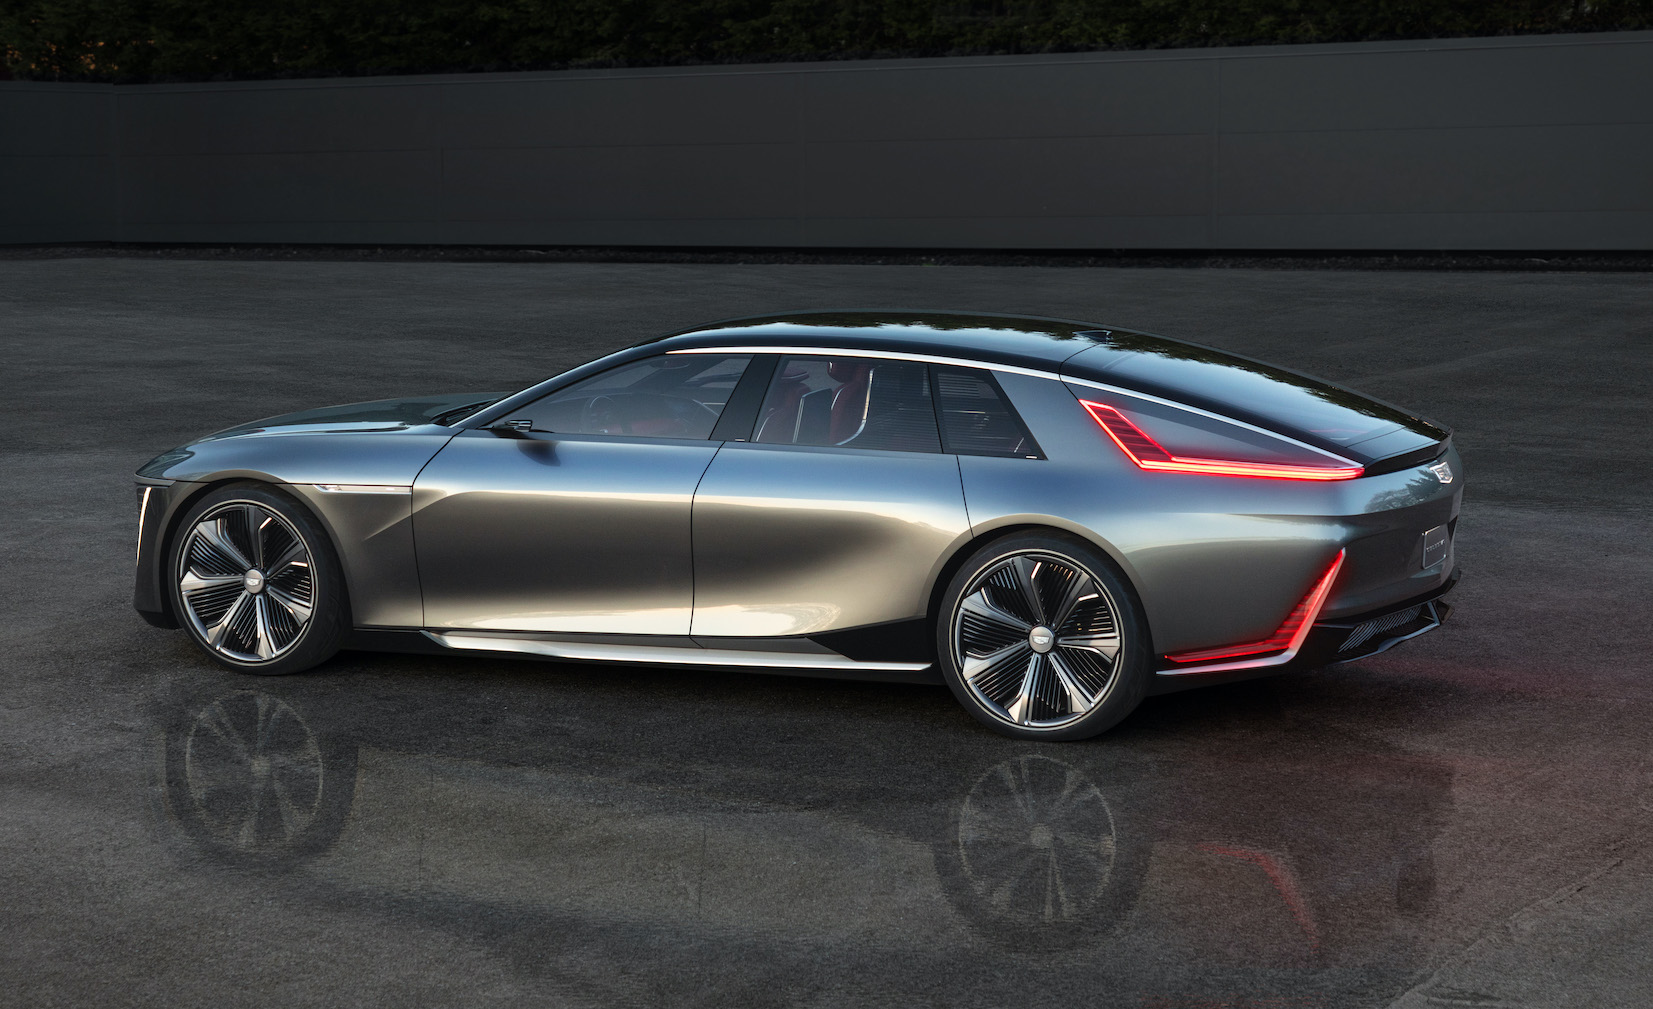 General Motors future models - Cadillac - Just Auto